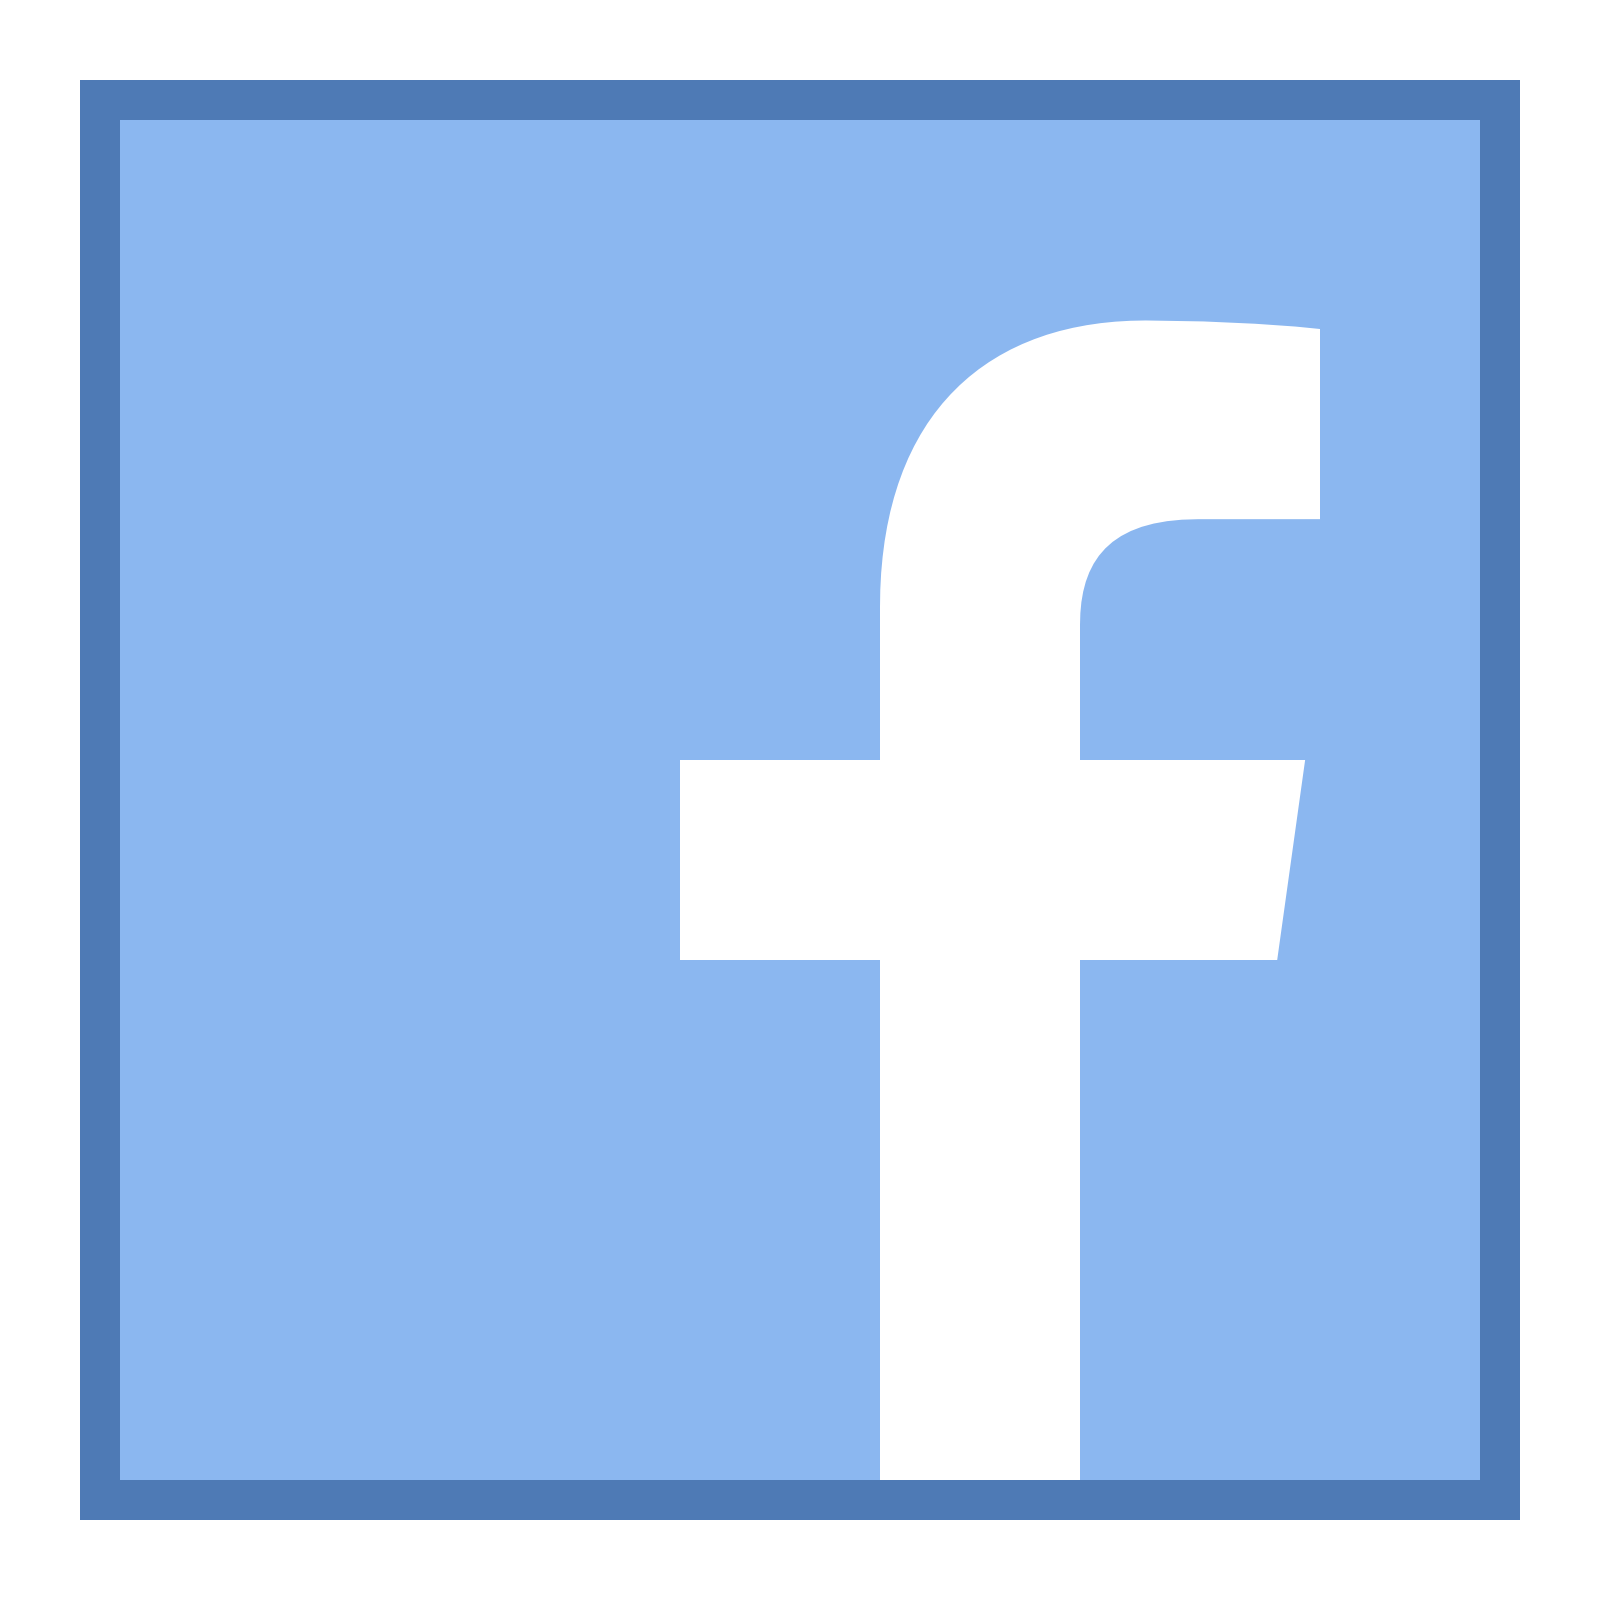 Official Small Facebook Logo - Free Facebook Icon Small 4527 | Download Facebook Icon Small - 4527